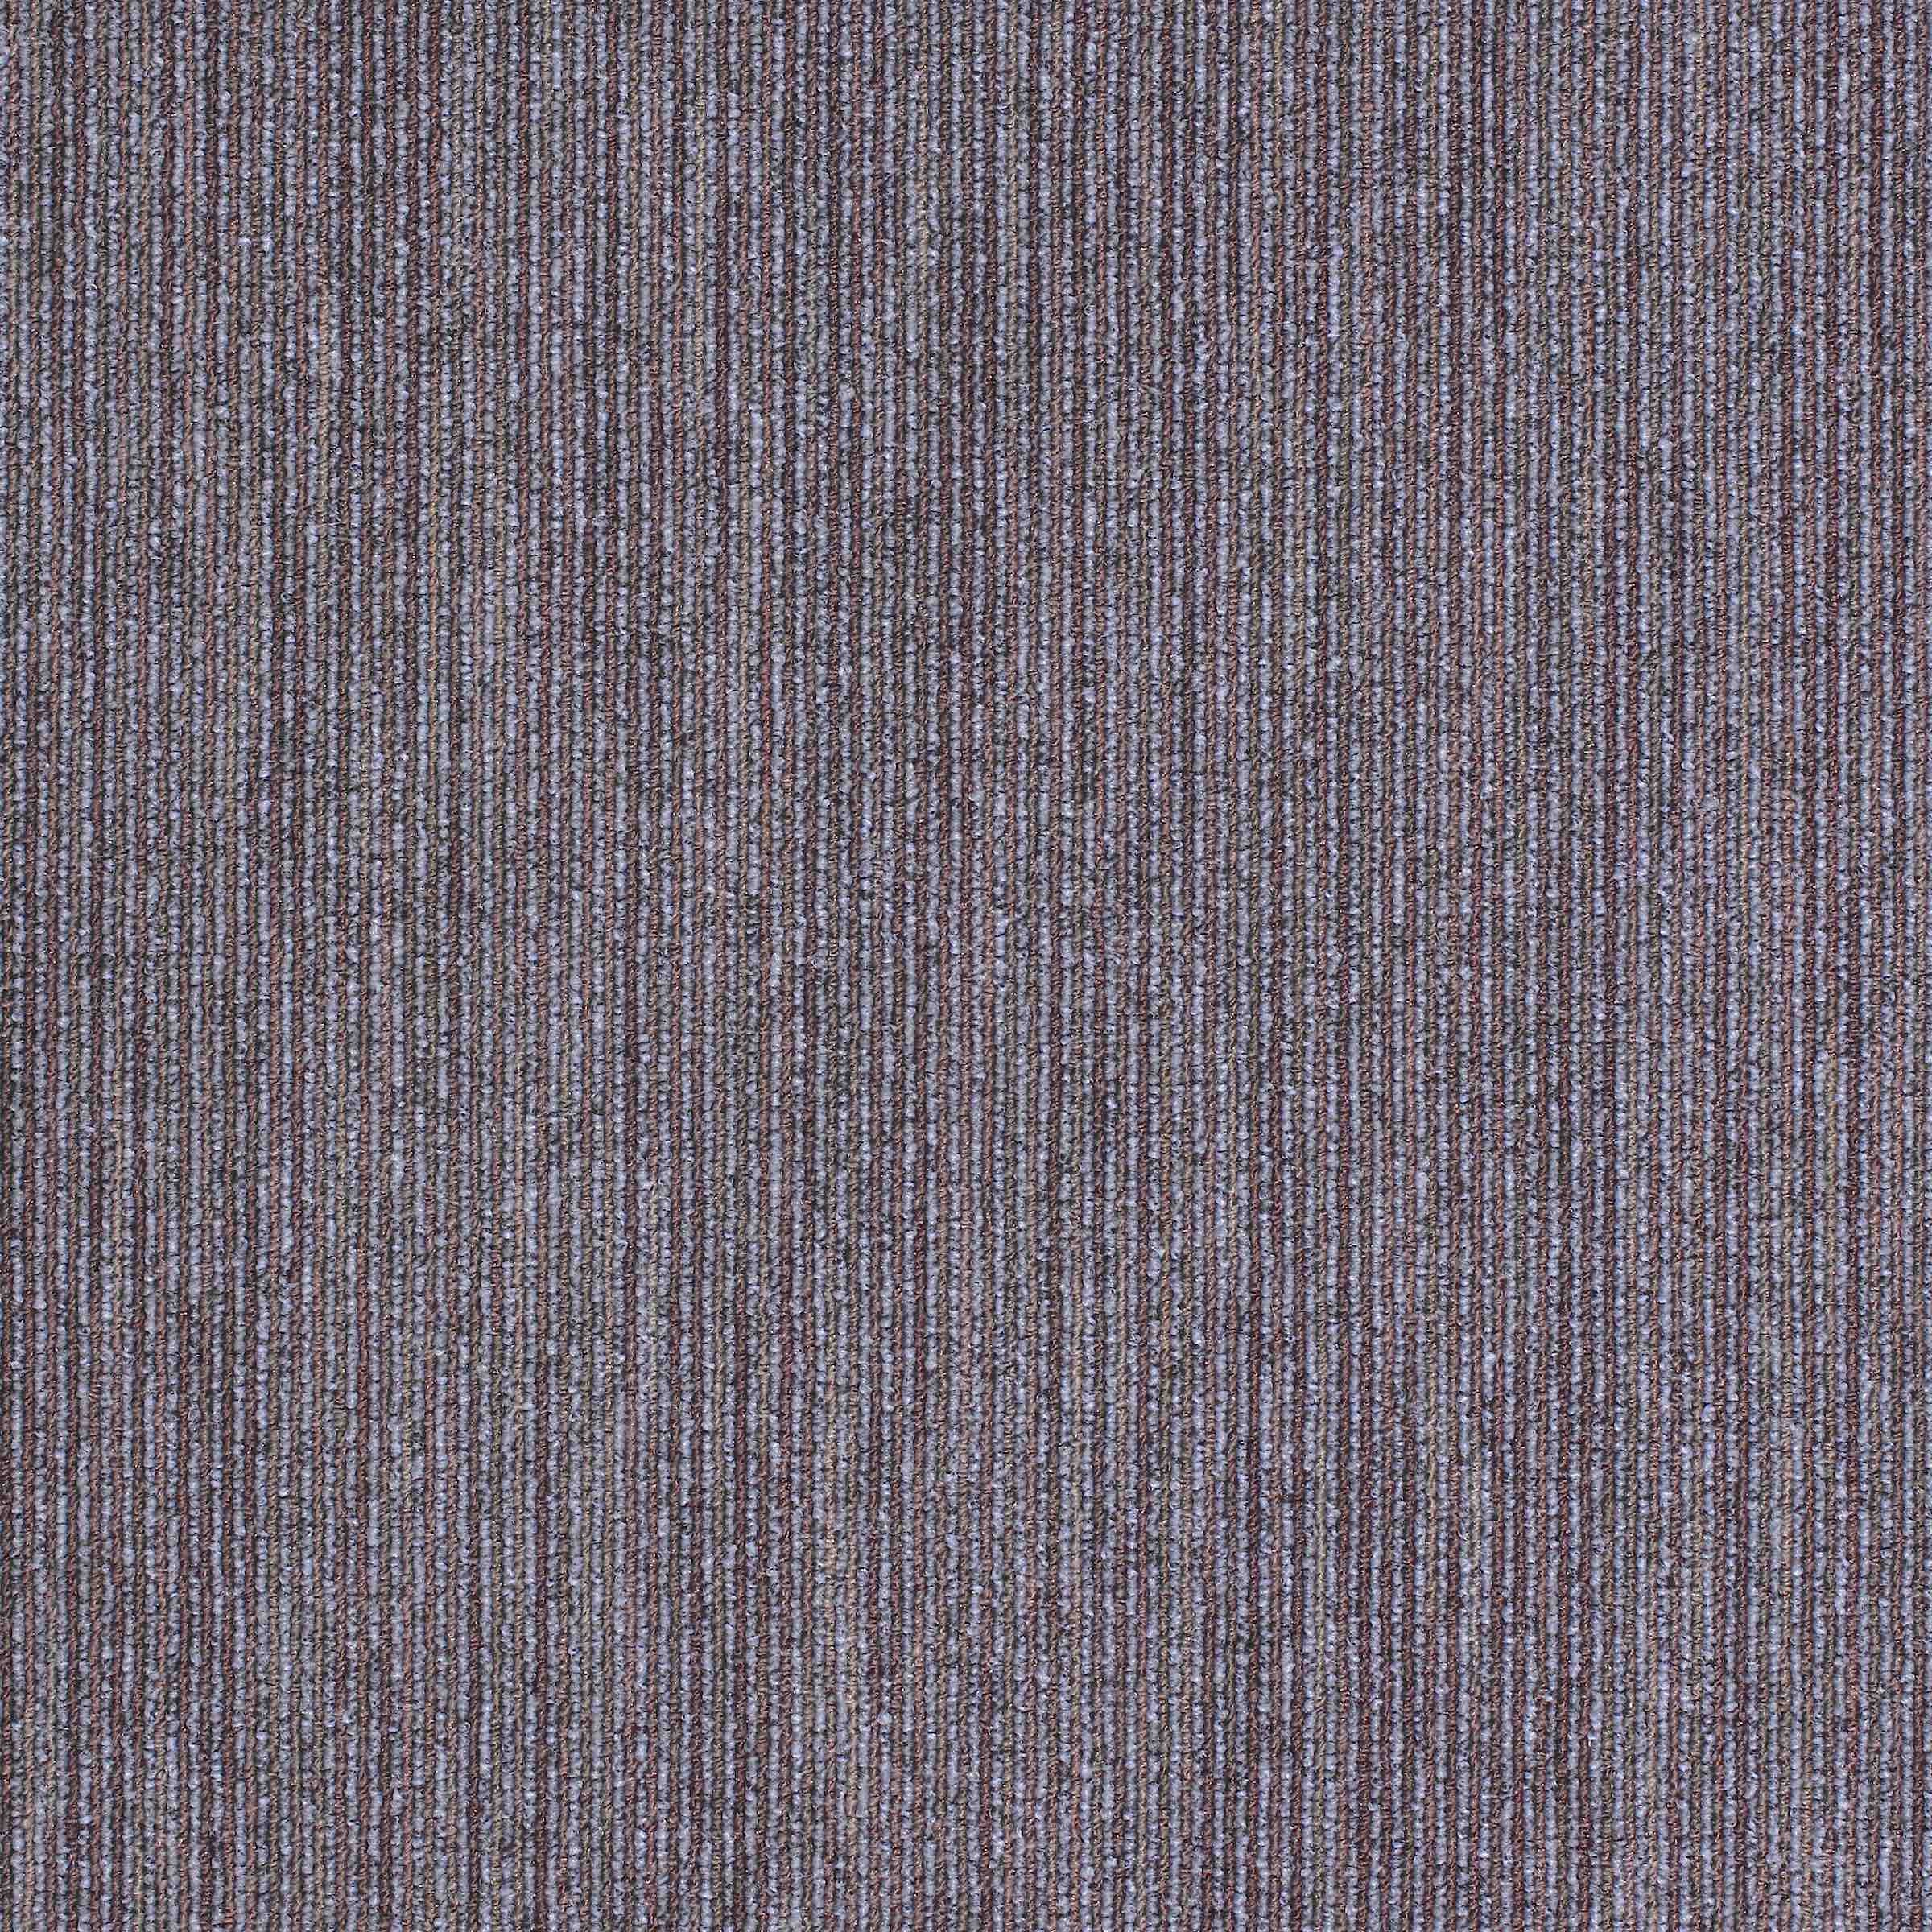 Workspace Linear | Millennium Blue | Paragon Carpet Tiles | Commercial Carpet Tiles